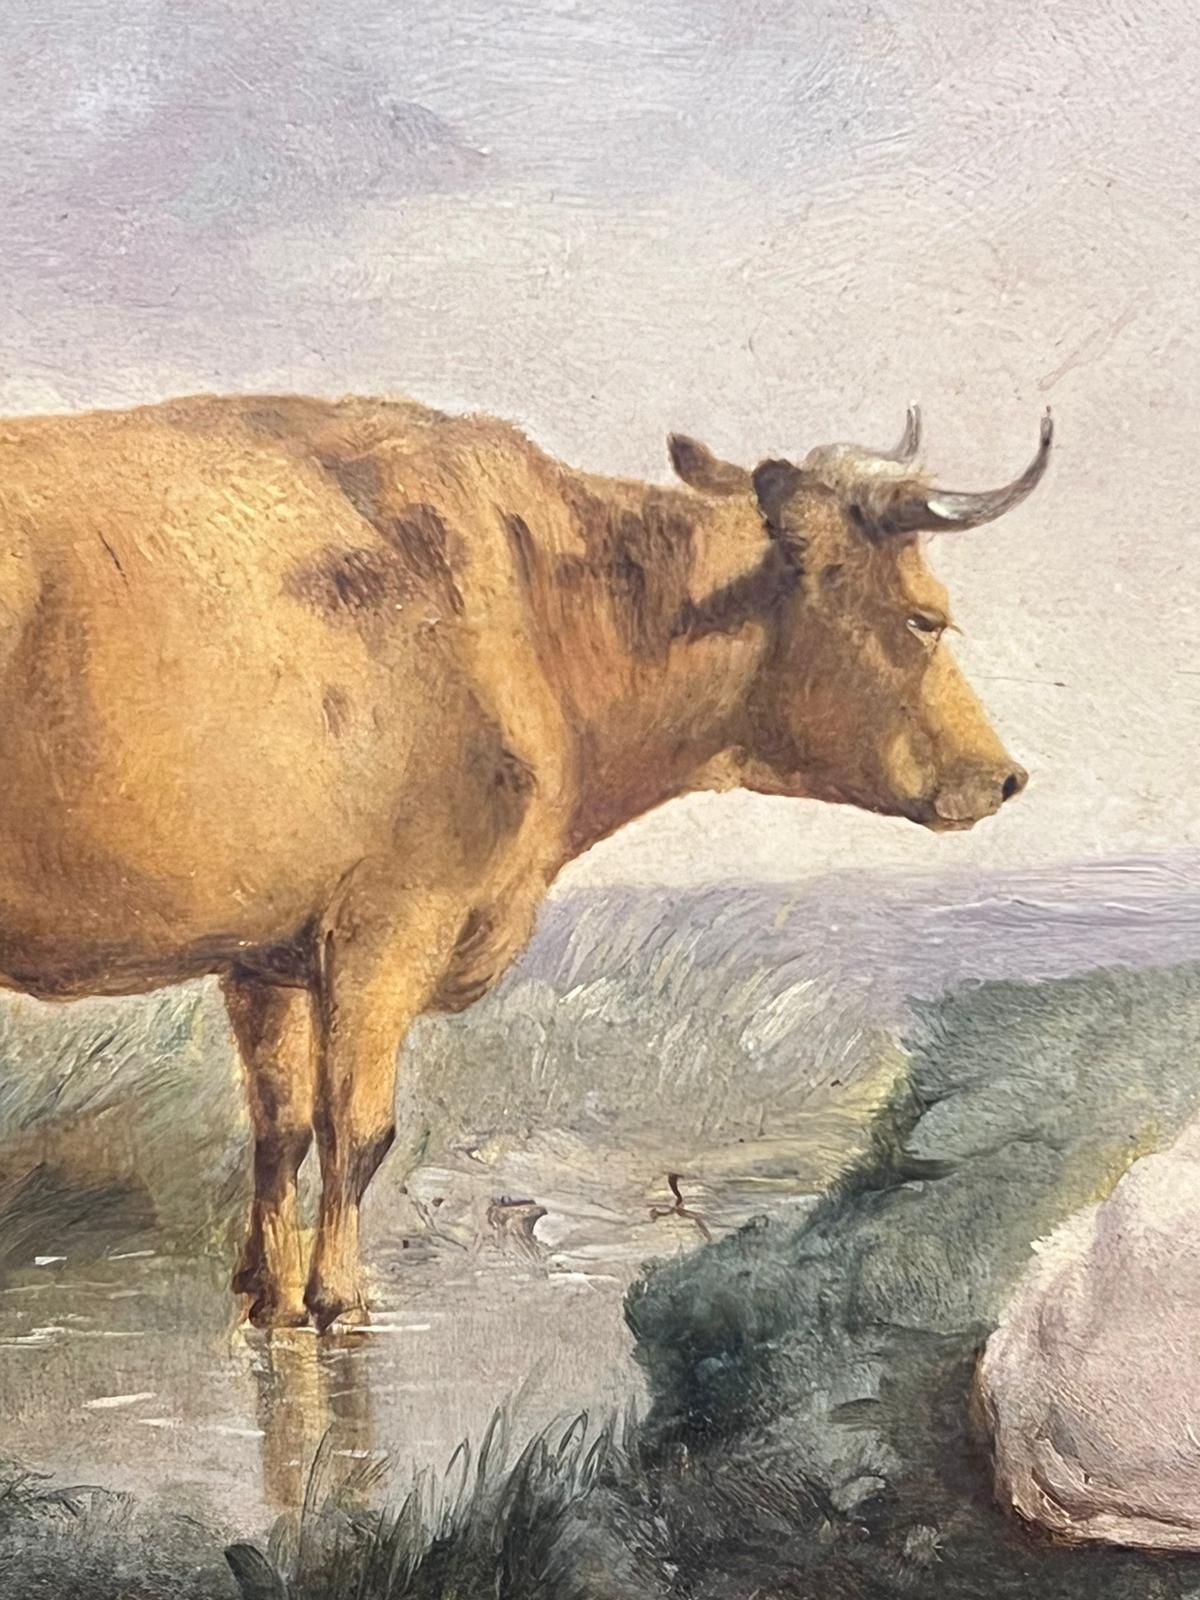 Cattle in Pastoral Landscape von Stream, viktorianisches englisches Ölgemälde, vergoldetes Rahmen (Viktorianisch), Painting, von English Victorian artist